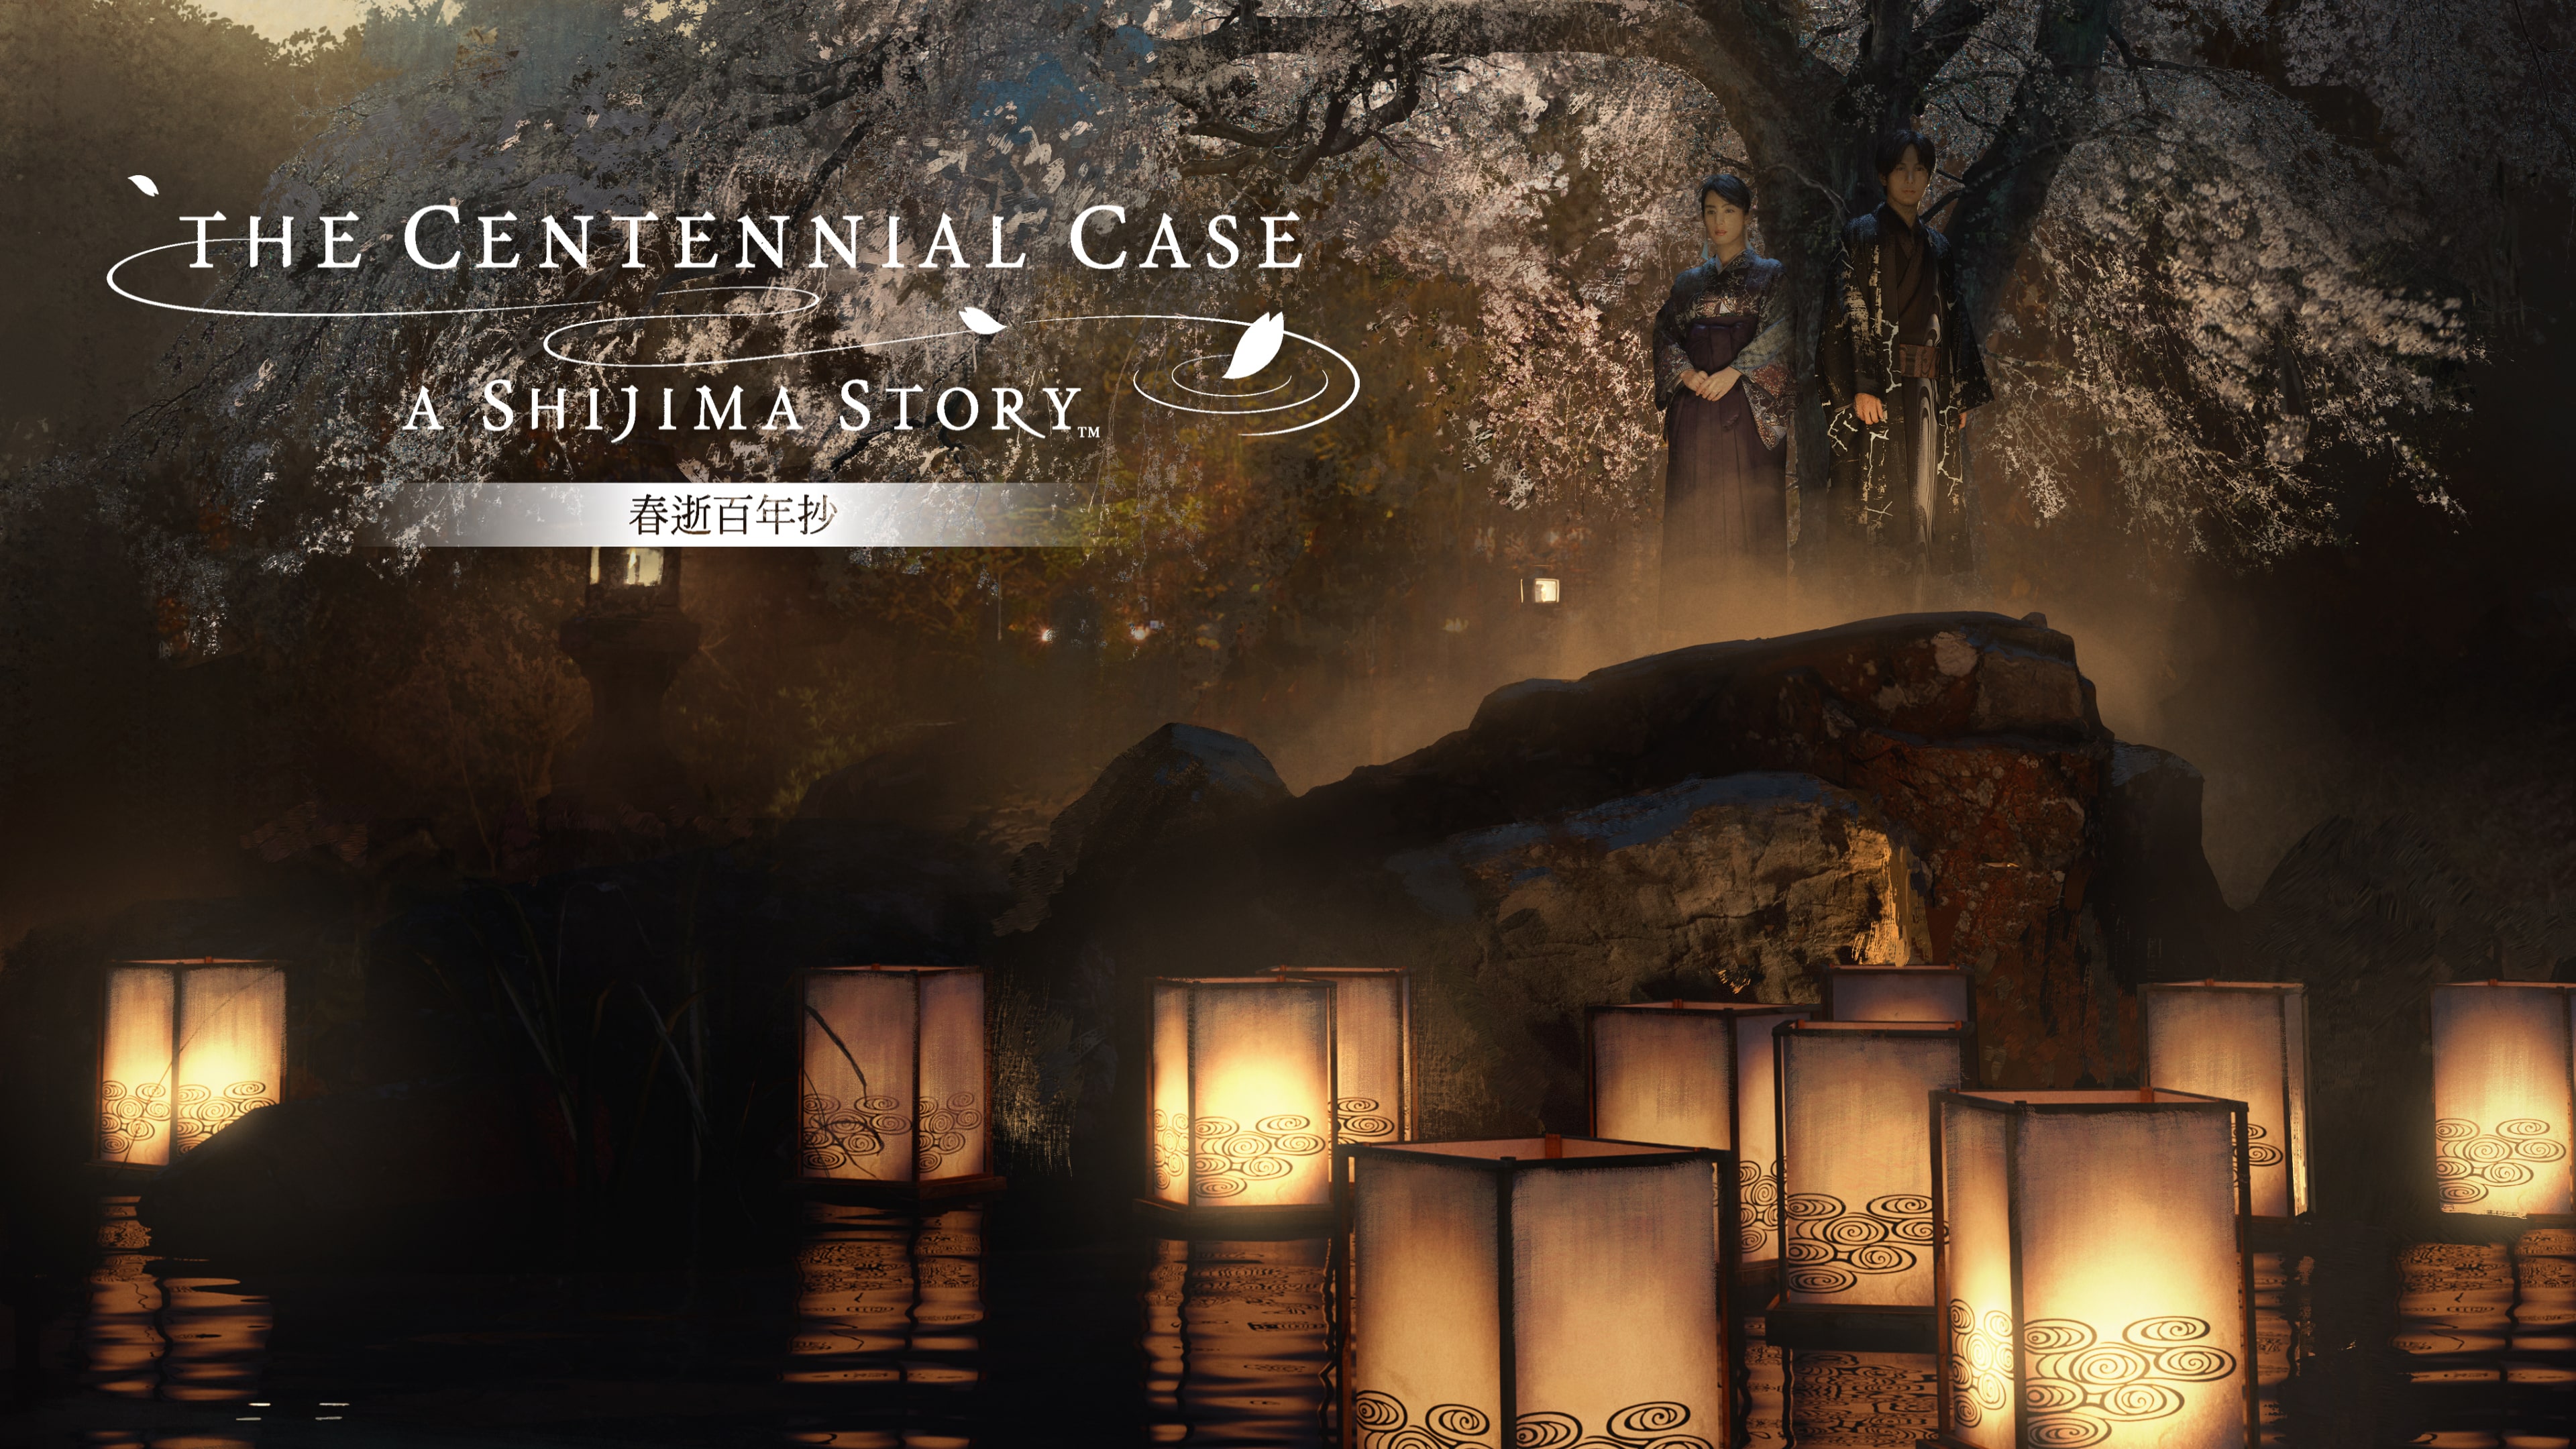 春逝百年抄 The Centennial Case: A Shijima Story PS4&PS5 (簡體中文, 韓文, 英文, 繁體中文, 日文)